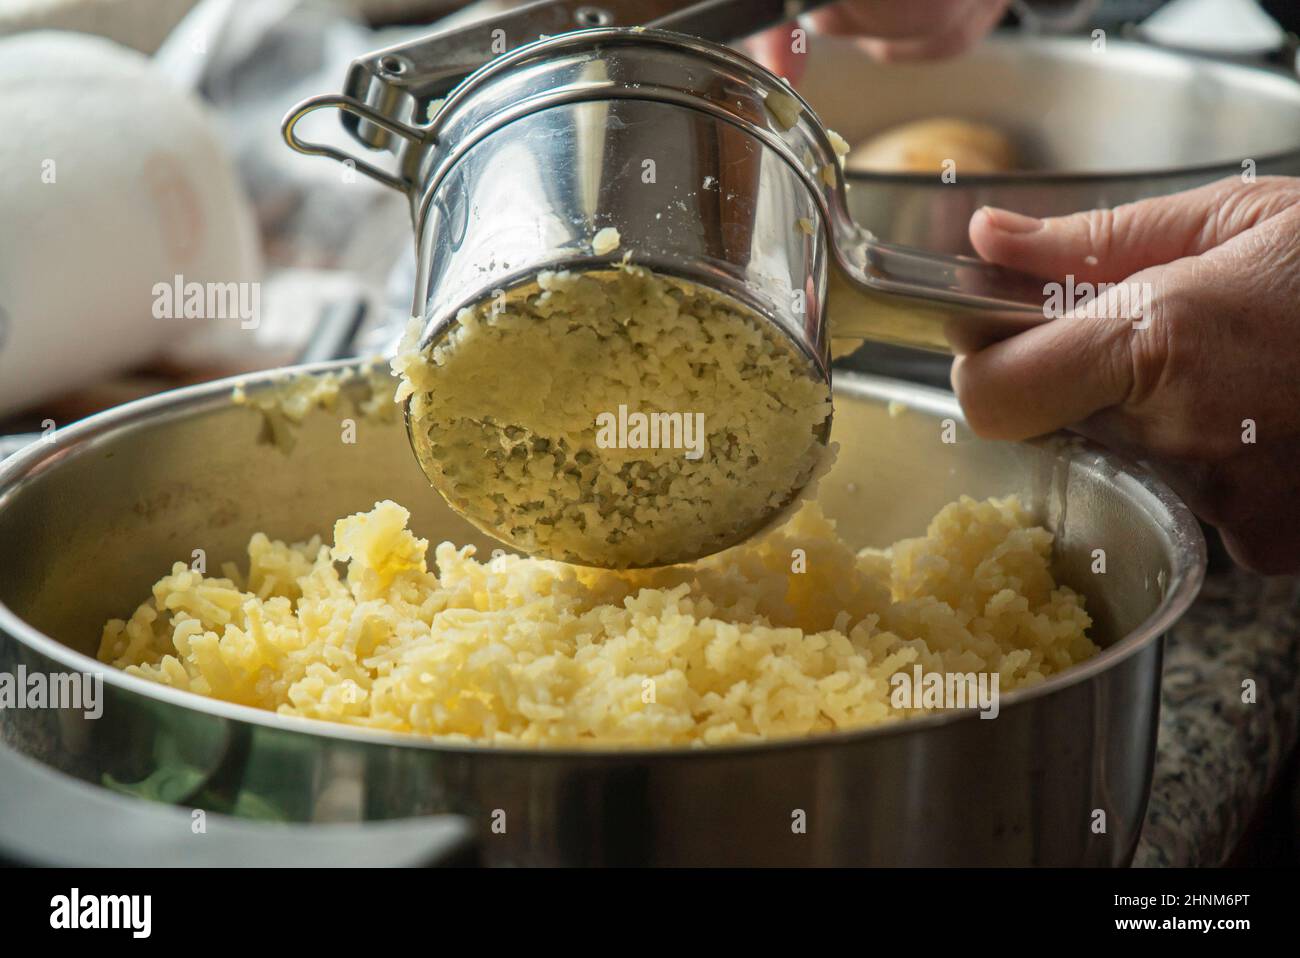 Schiacciare le patate per preparare la purea Foto Stock